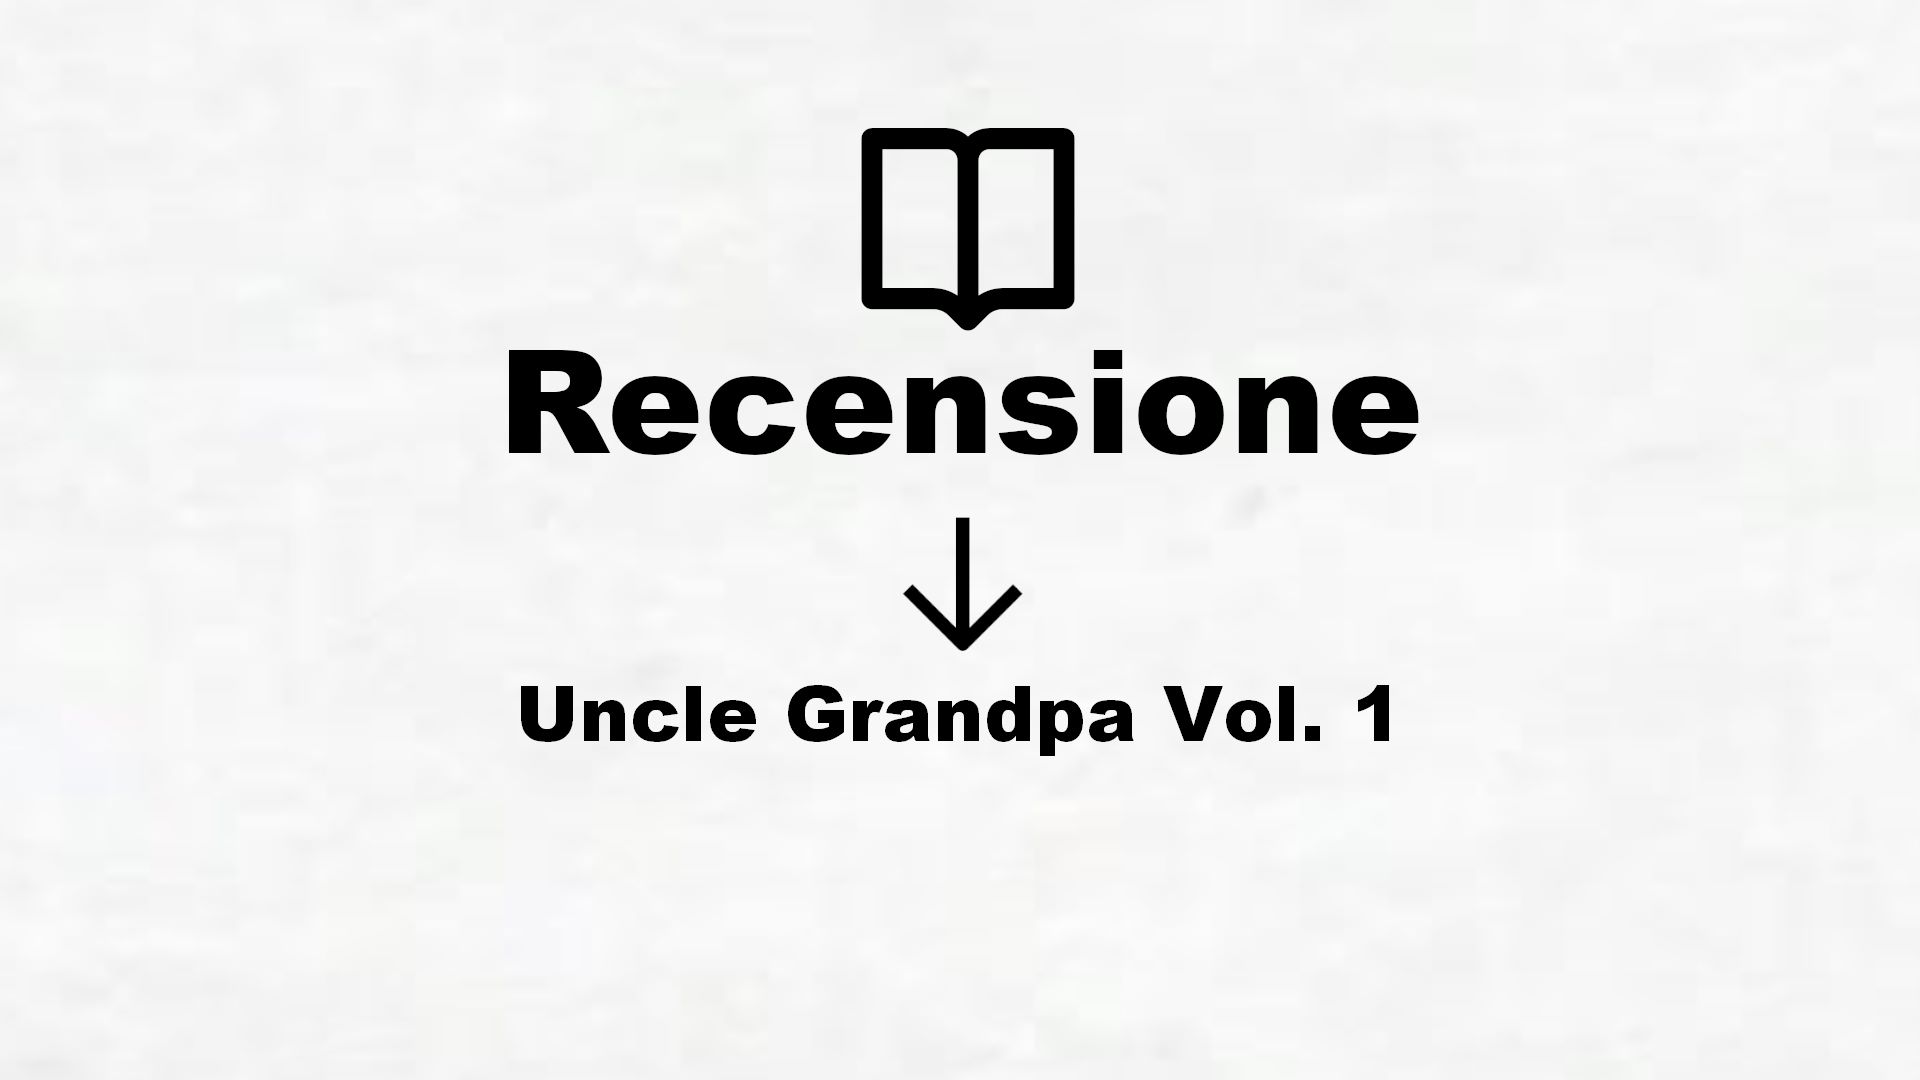 Uncle Grandpa Vol. 1 – Recensione Libro